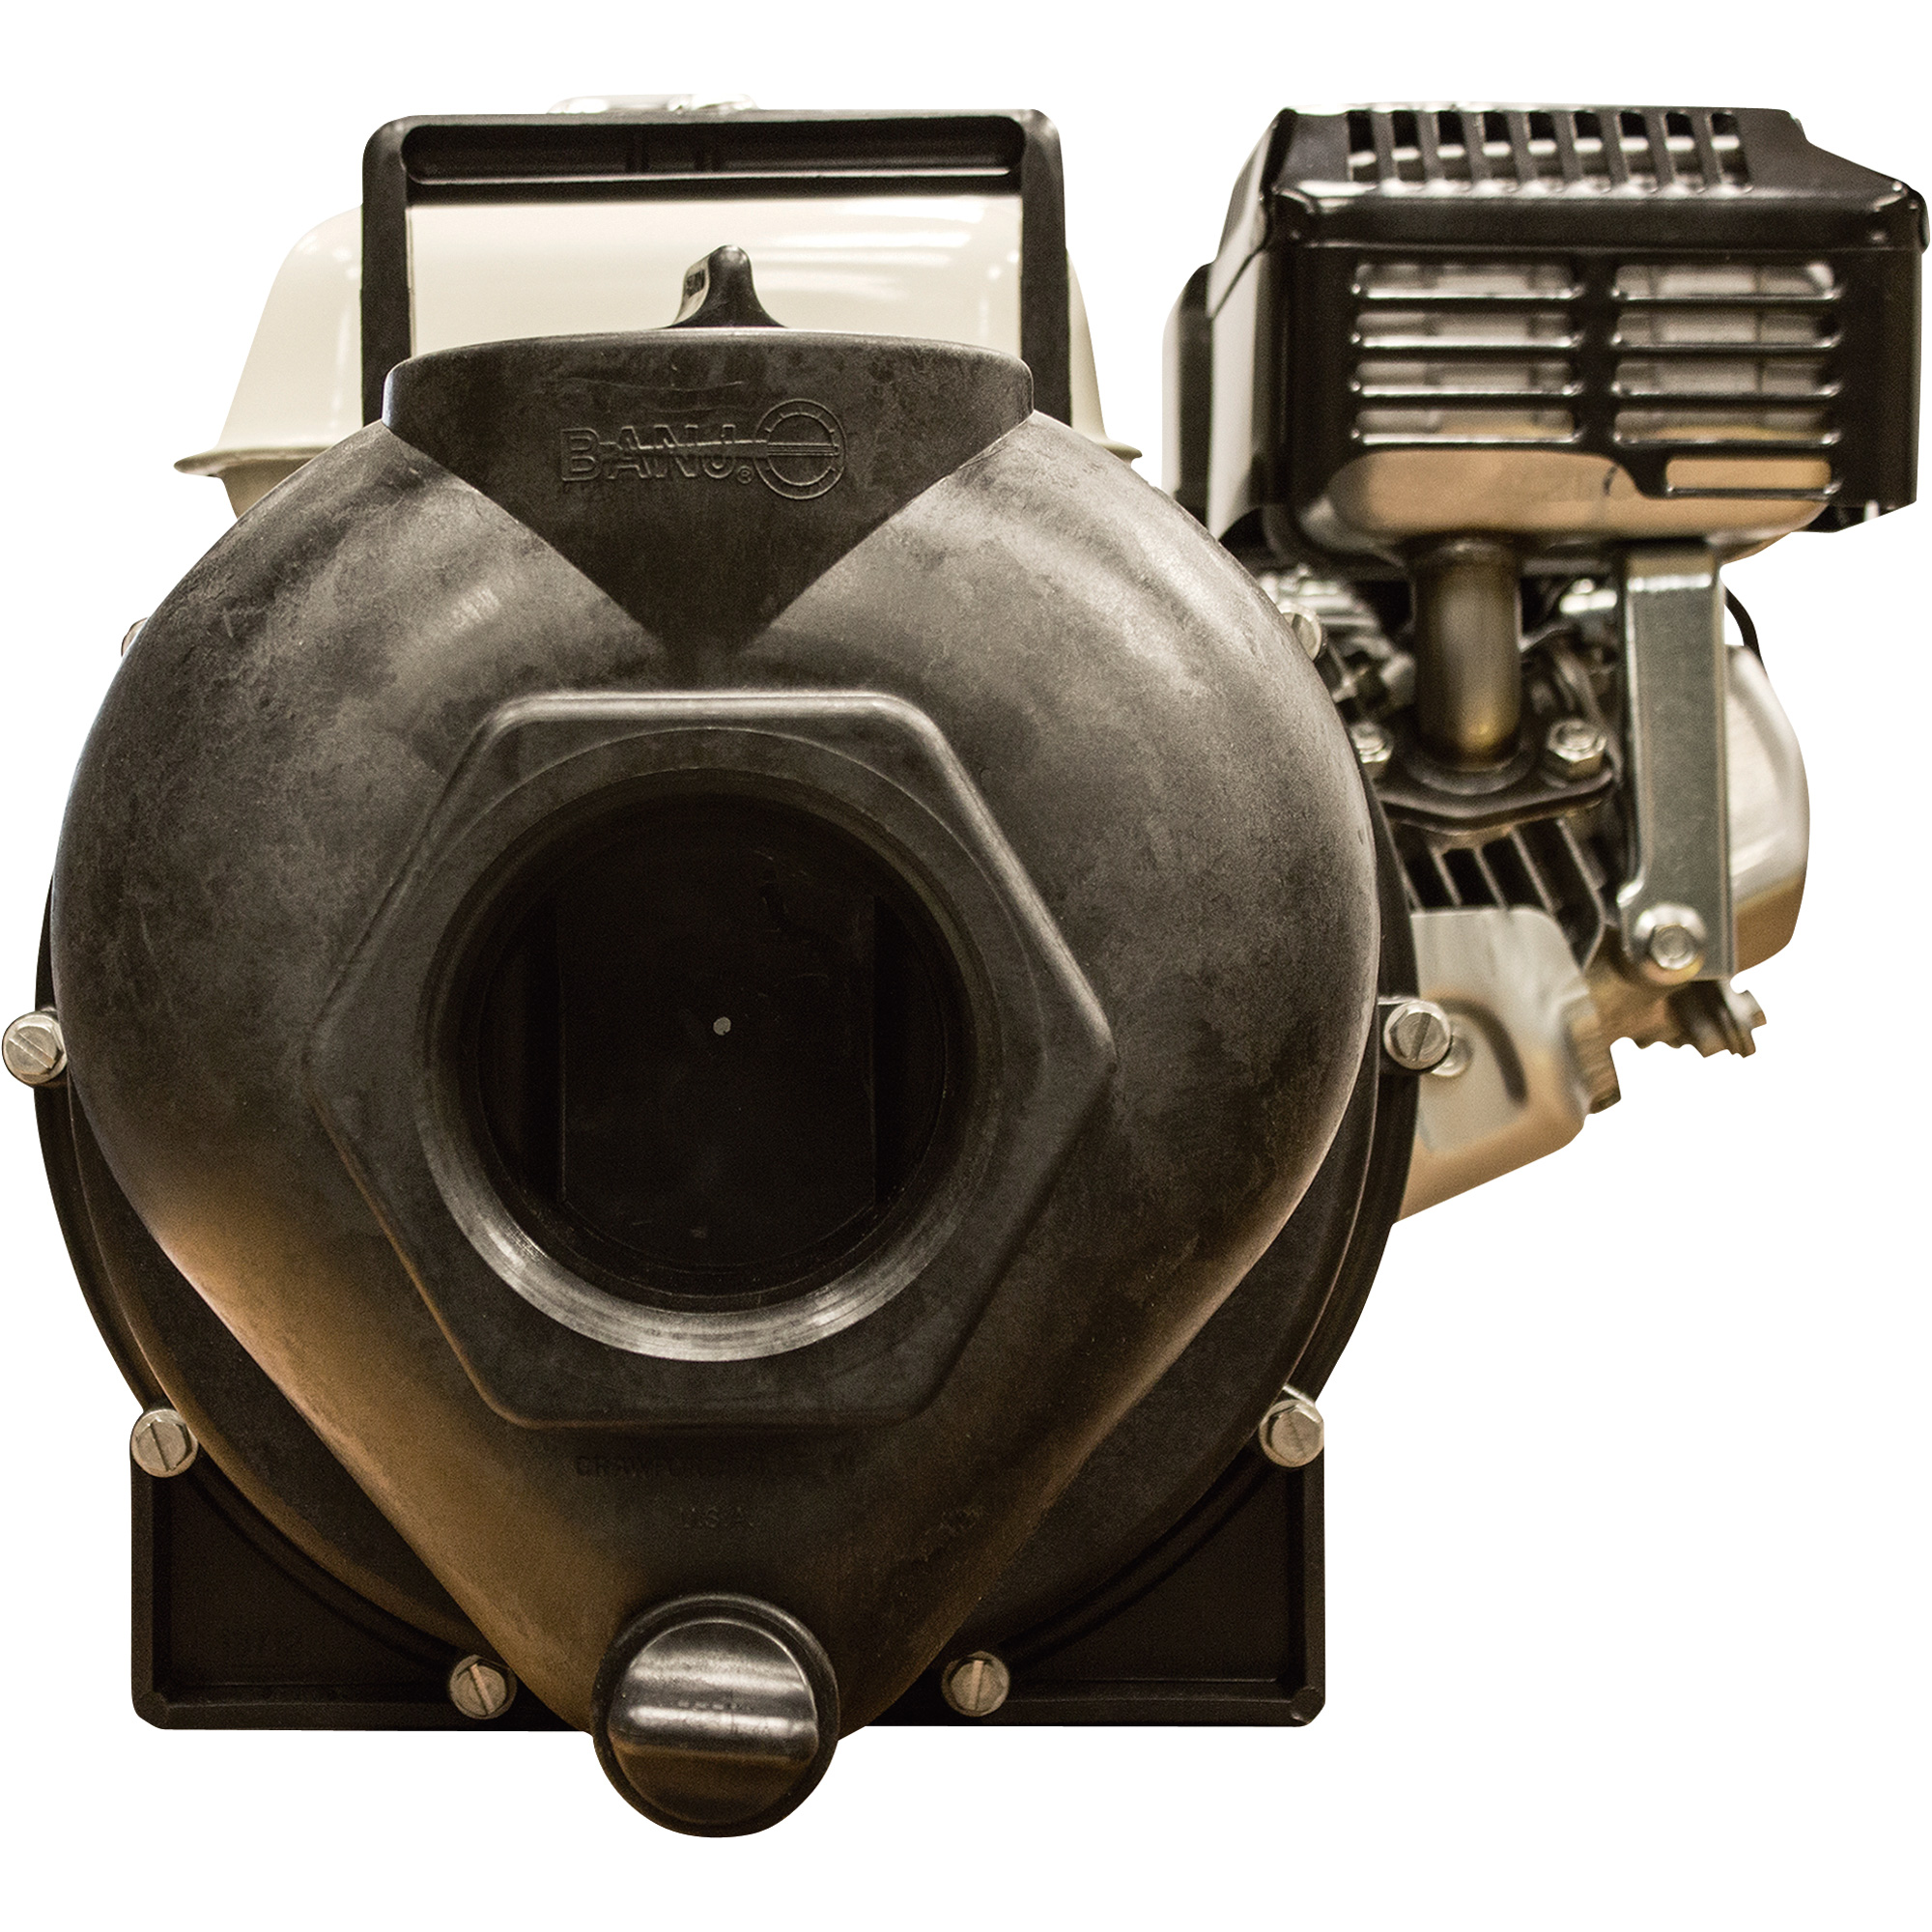 Banjo Self-Priming Transfer Chemical Water Pump â 17,400 GPH, 3Inch Ports, Honda GX200 Engine, Model 300PH-6-200.BAN